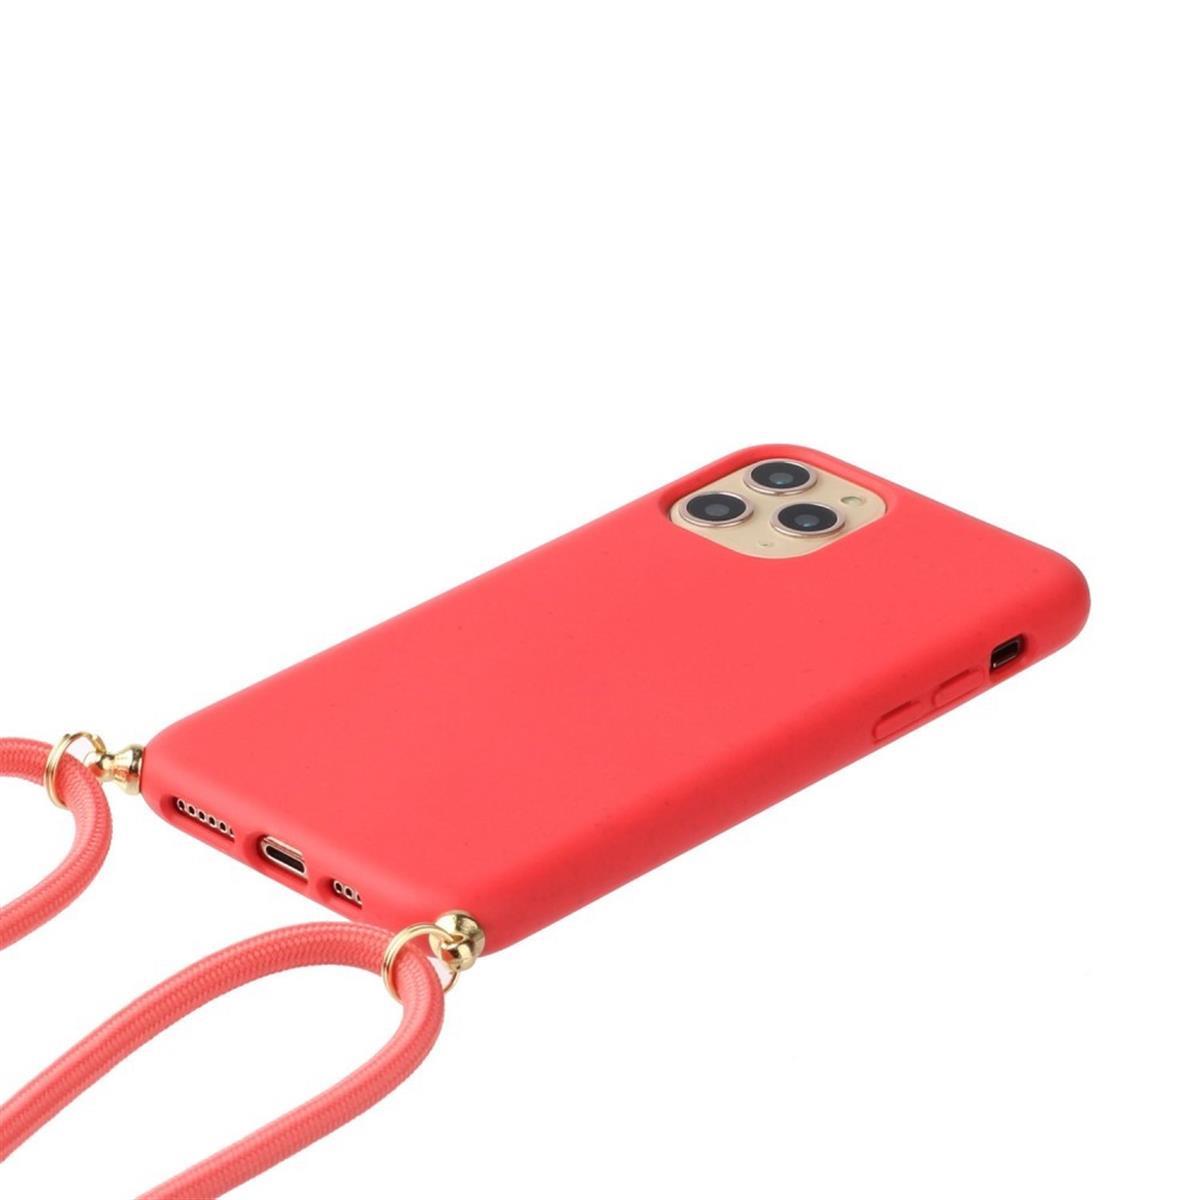 Hülle für Apple iPhone 13 Handyhülle Silikon Case Handykette Band Schnur Rot